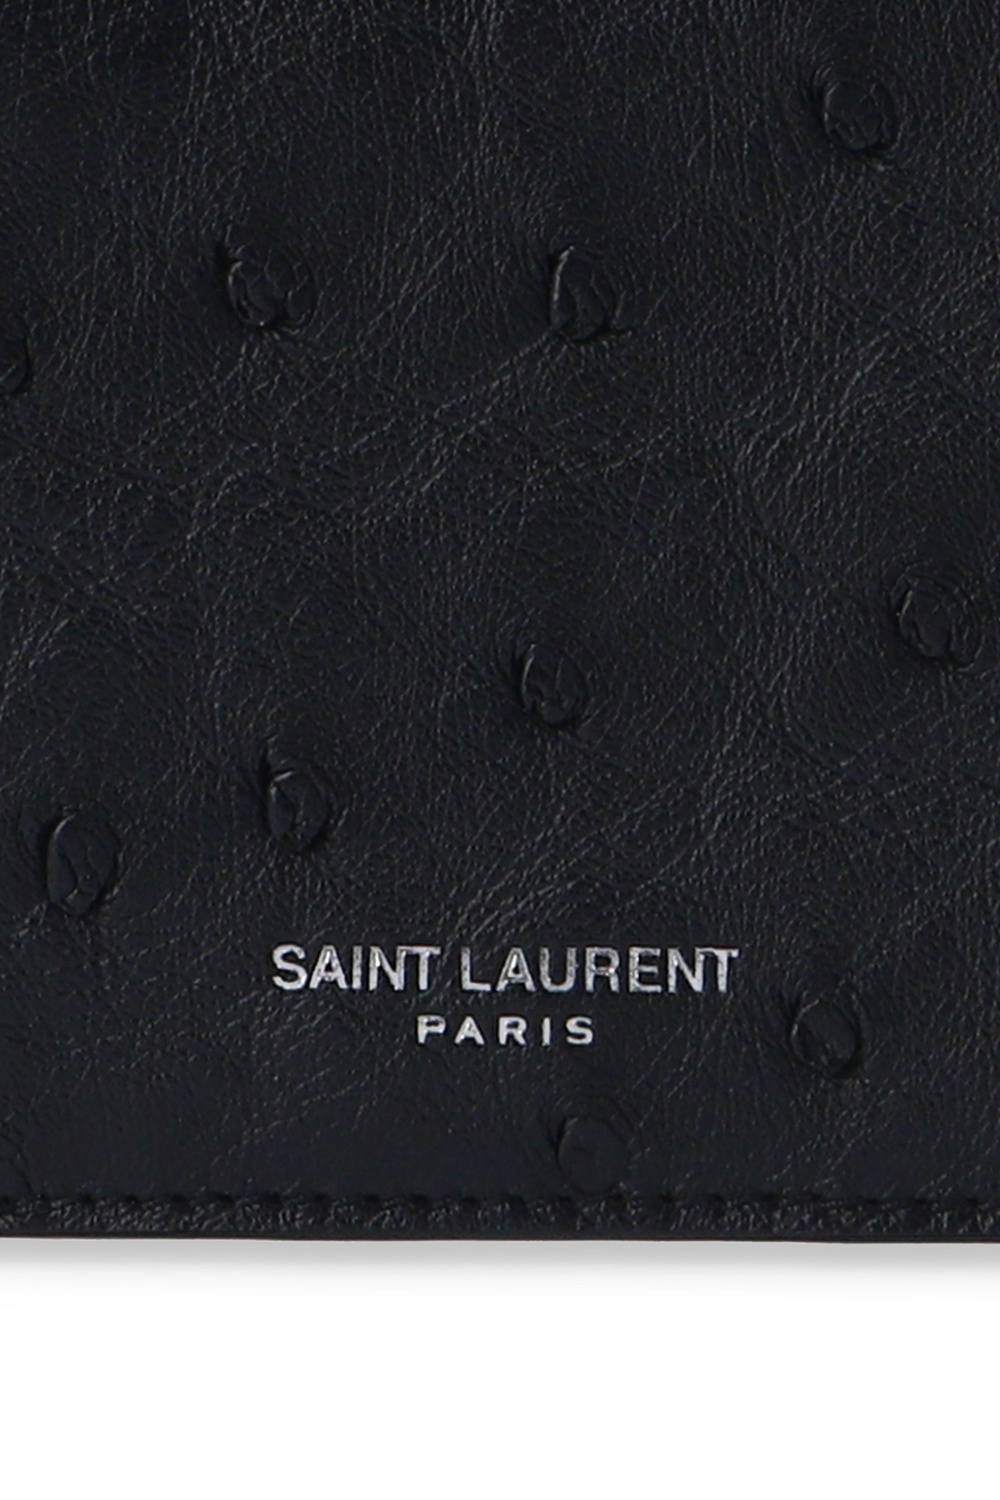 Saint Laurent Men's Logo-Appliquéd Leather Cardholder